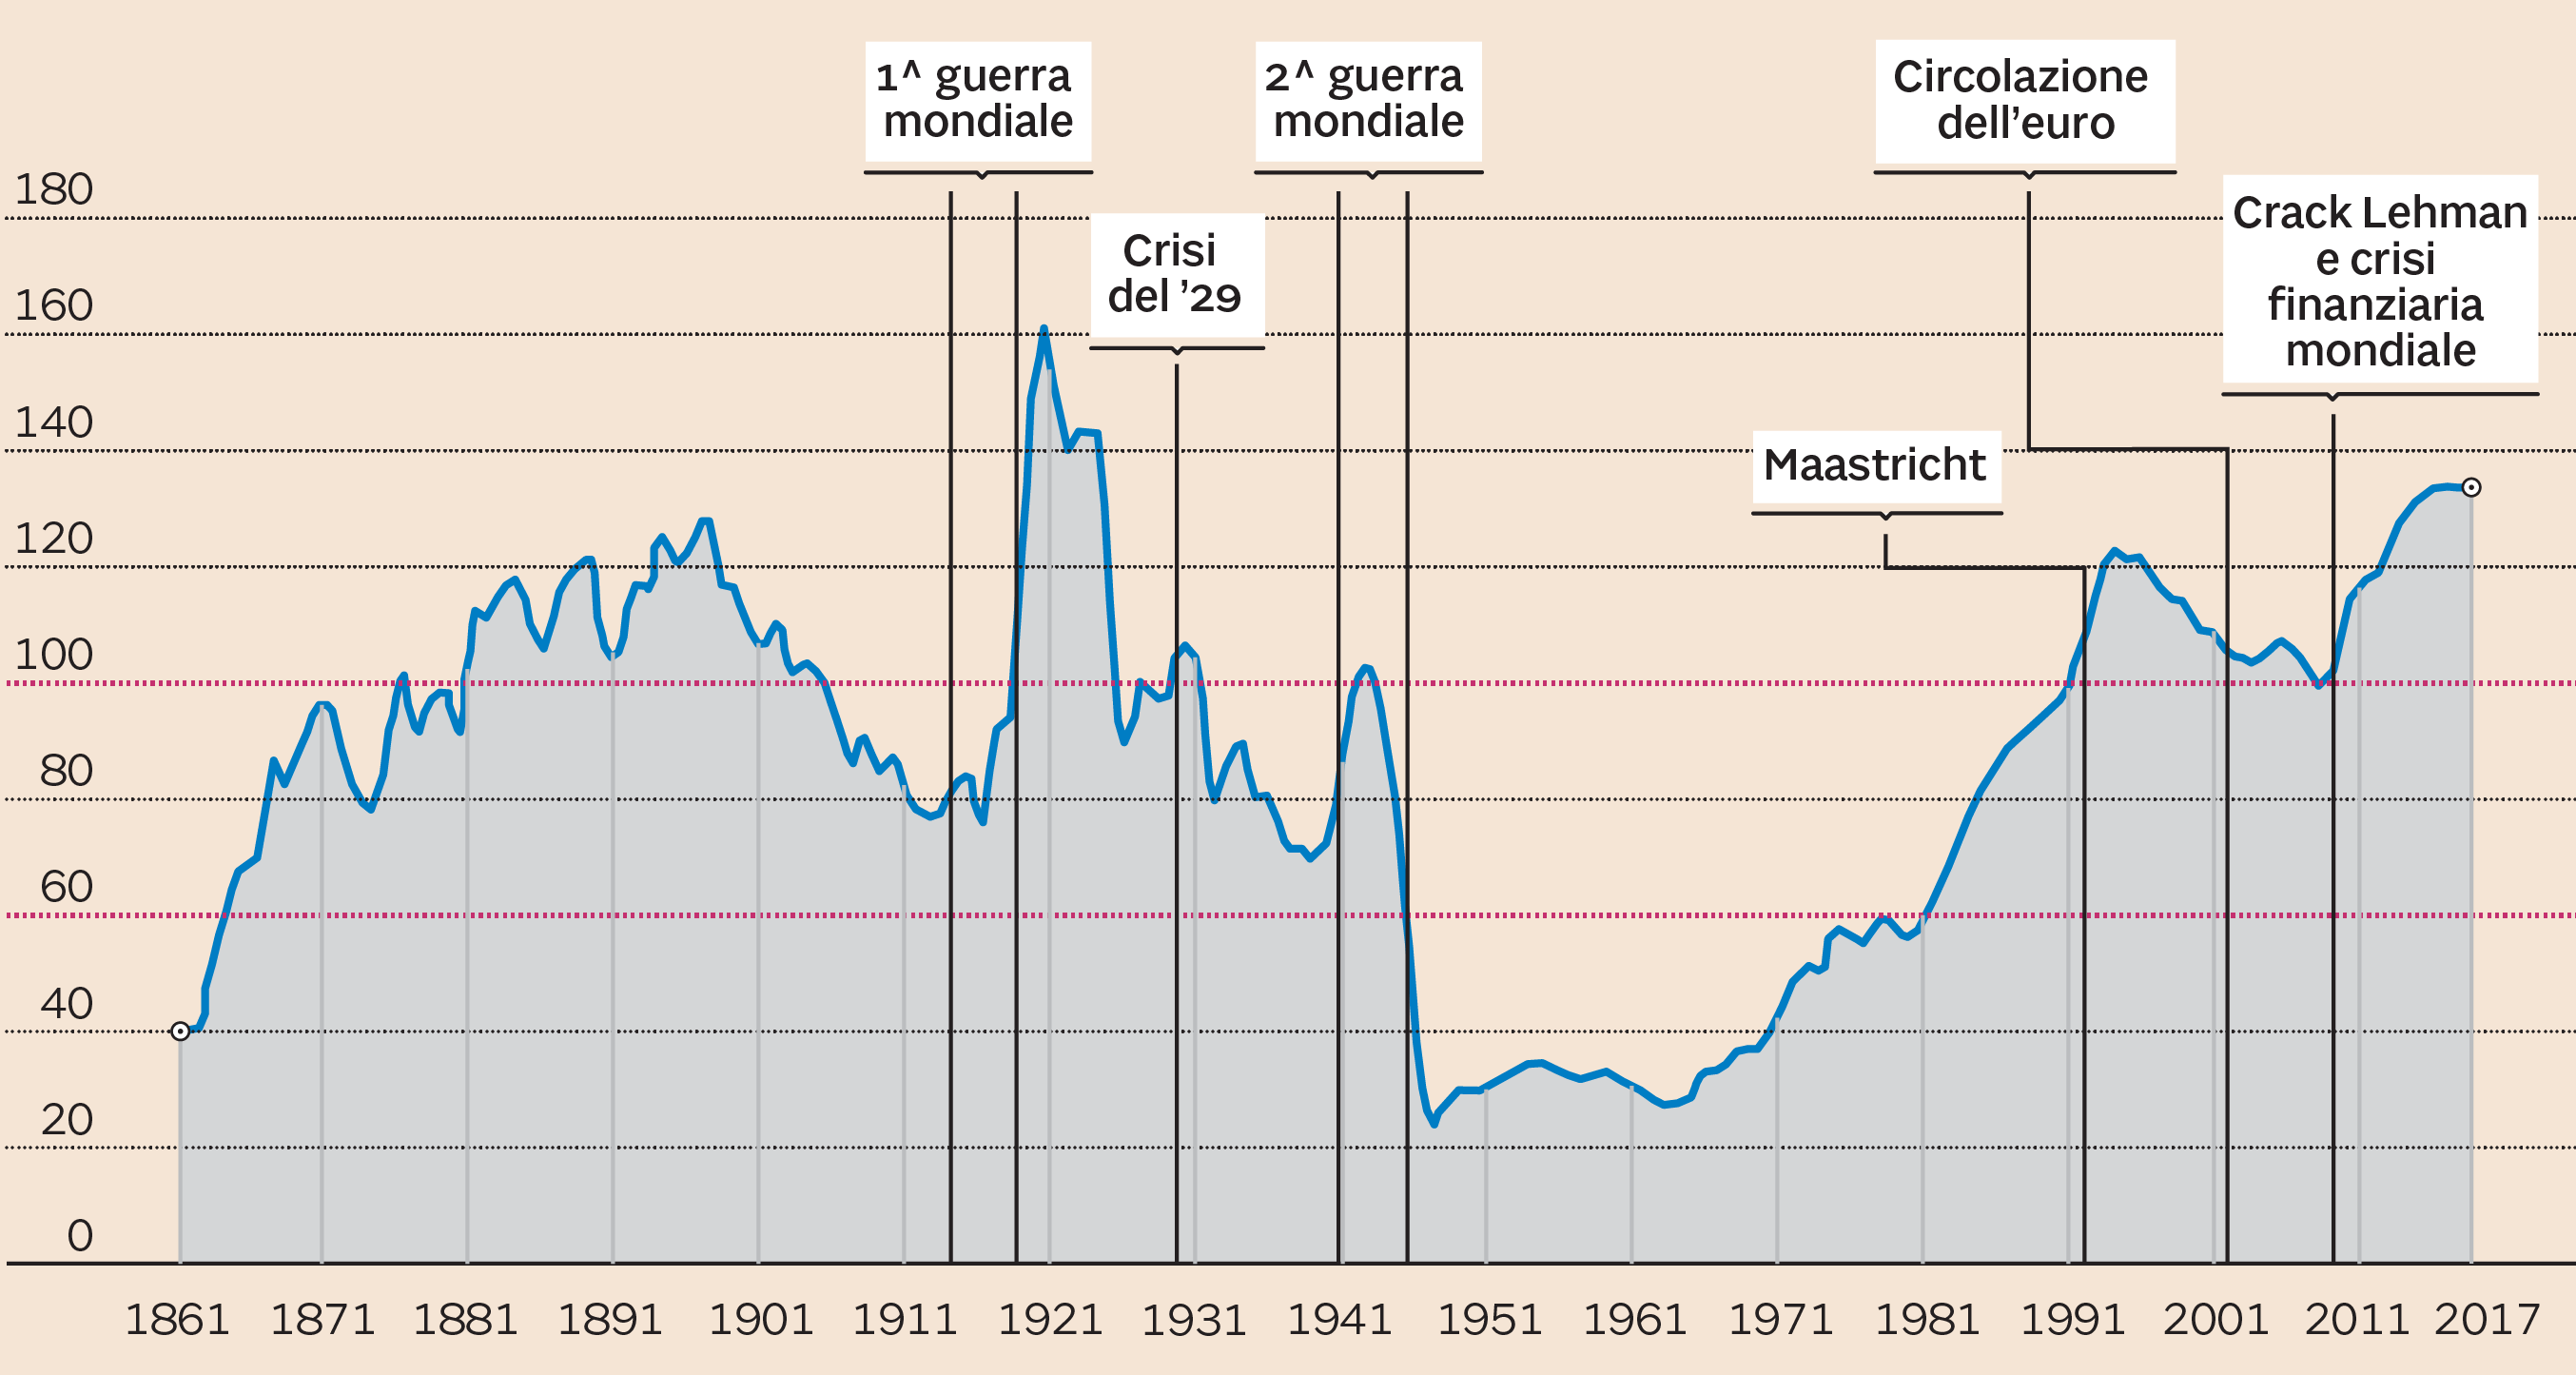 Italy Debt History 1861 - 2017